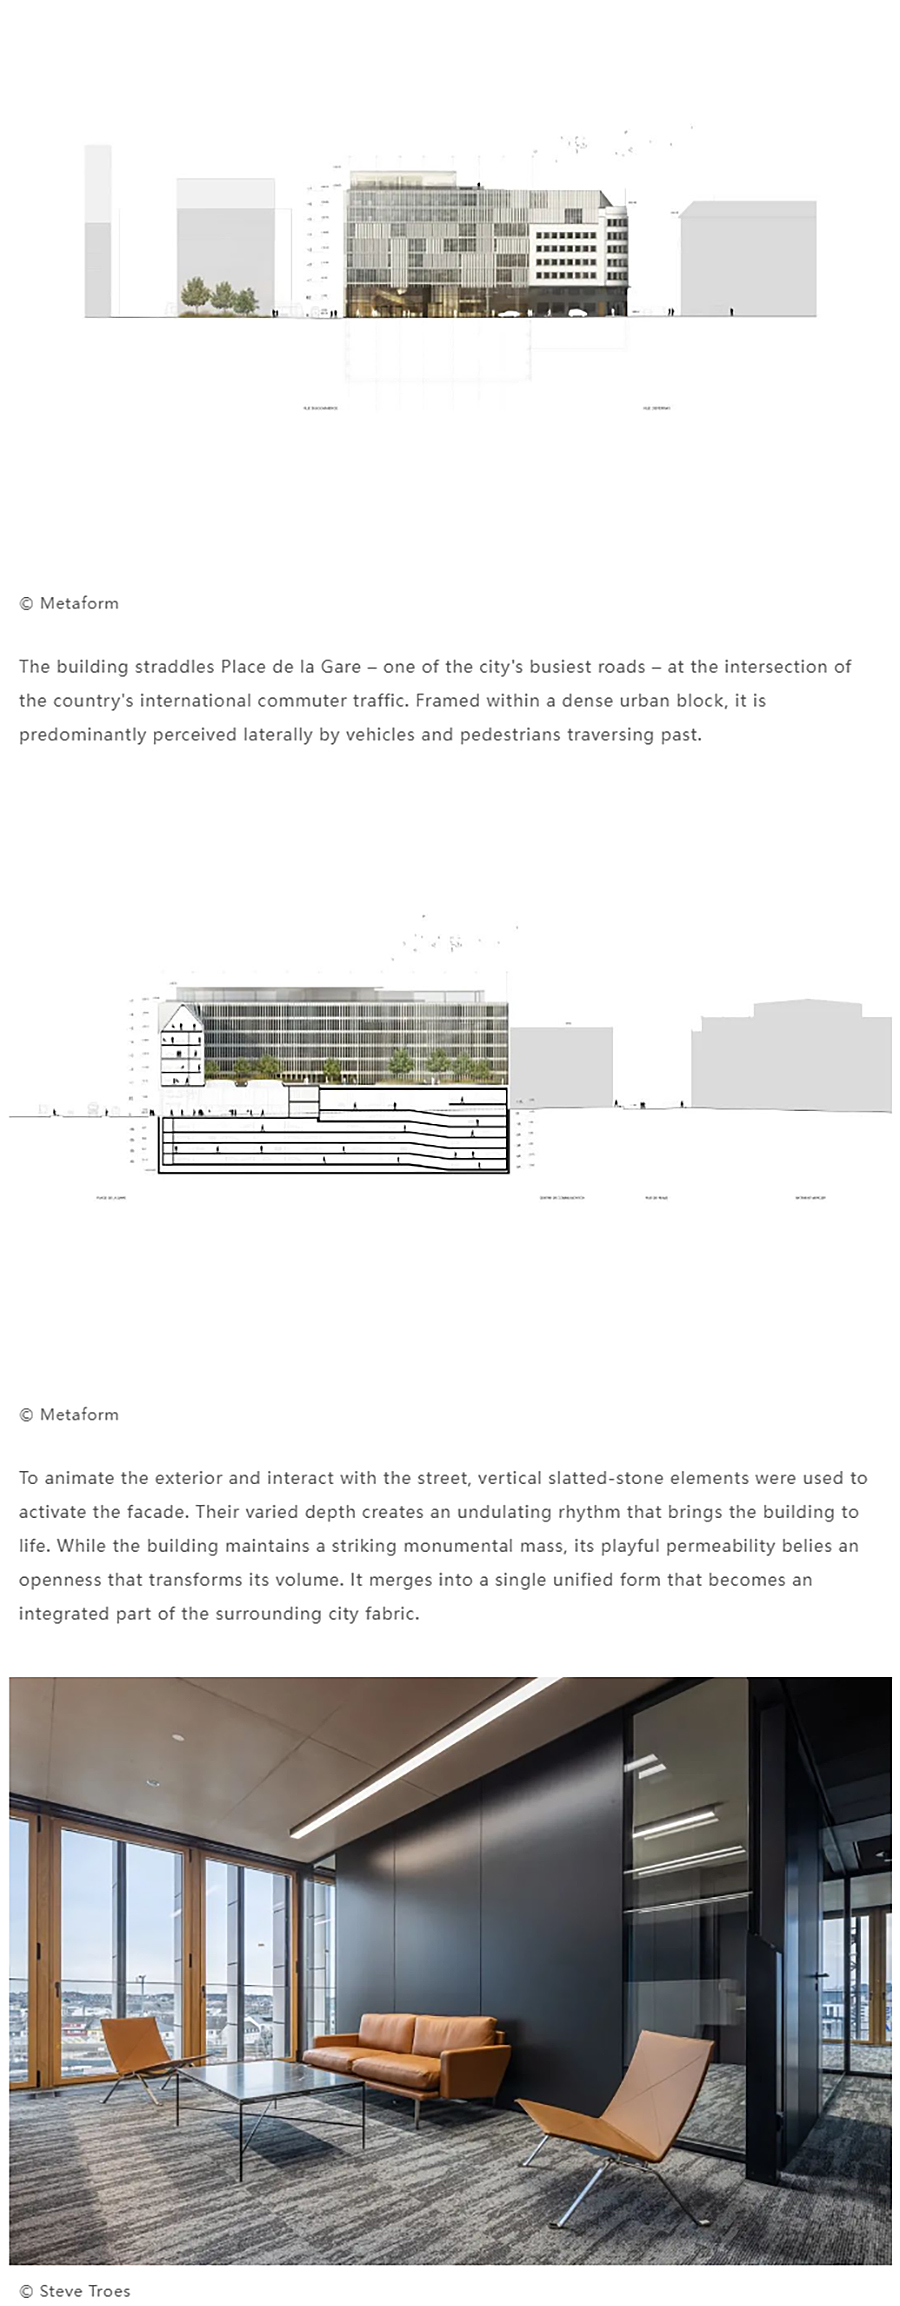 Renewal-Zone：卢森堡邮政电信总部︱尊重建筑遗产，融合打造净零碳建筑_0008_图层-9 拷贝.jpg